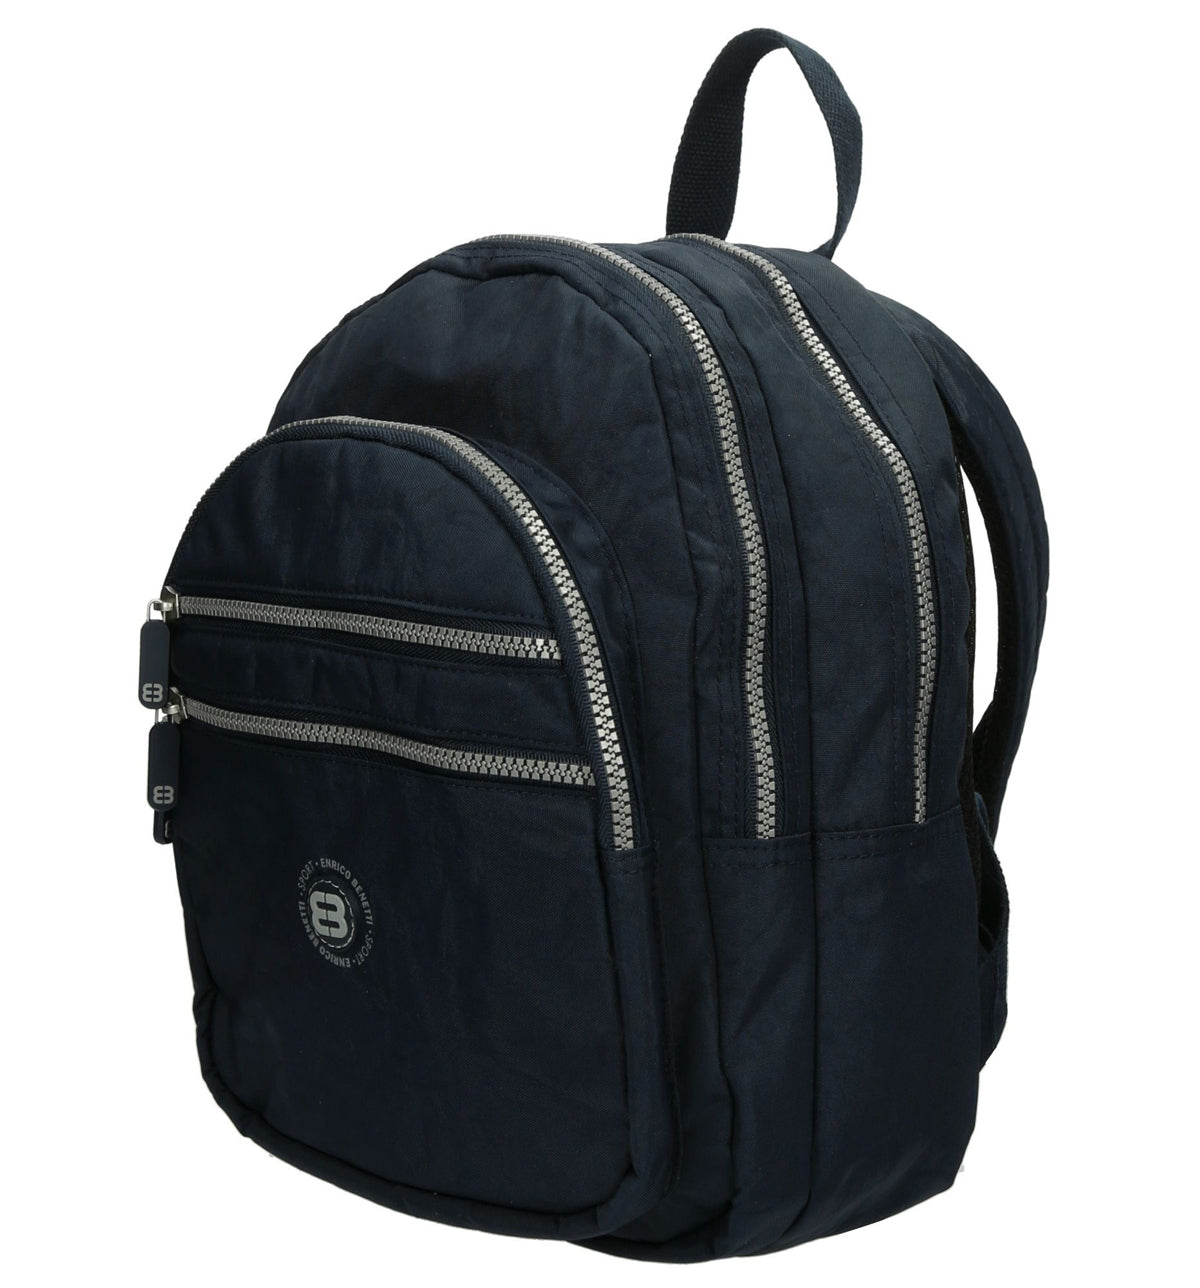 City backpack lichtgewicht blauw medium size